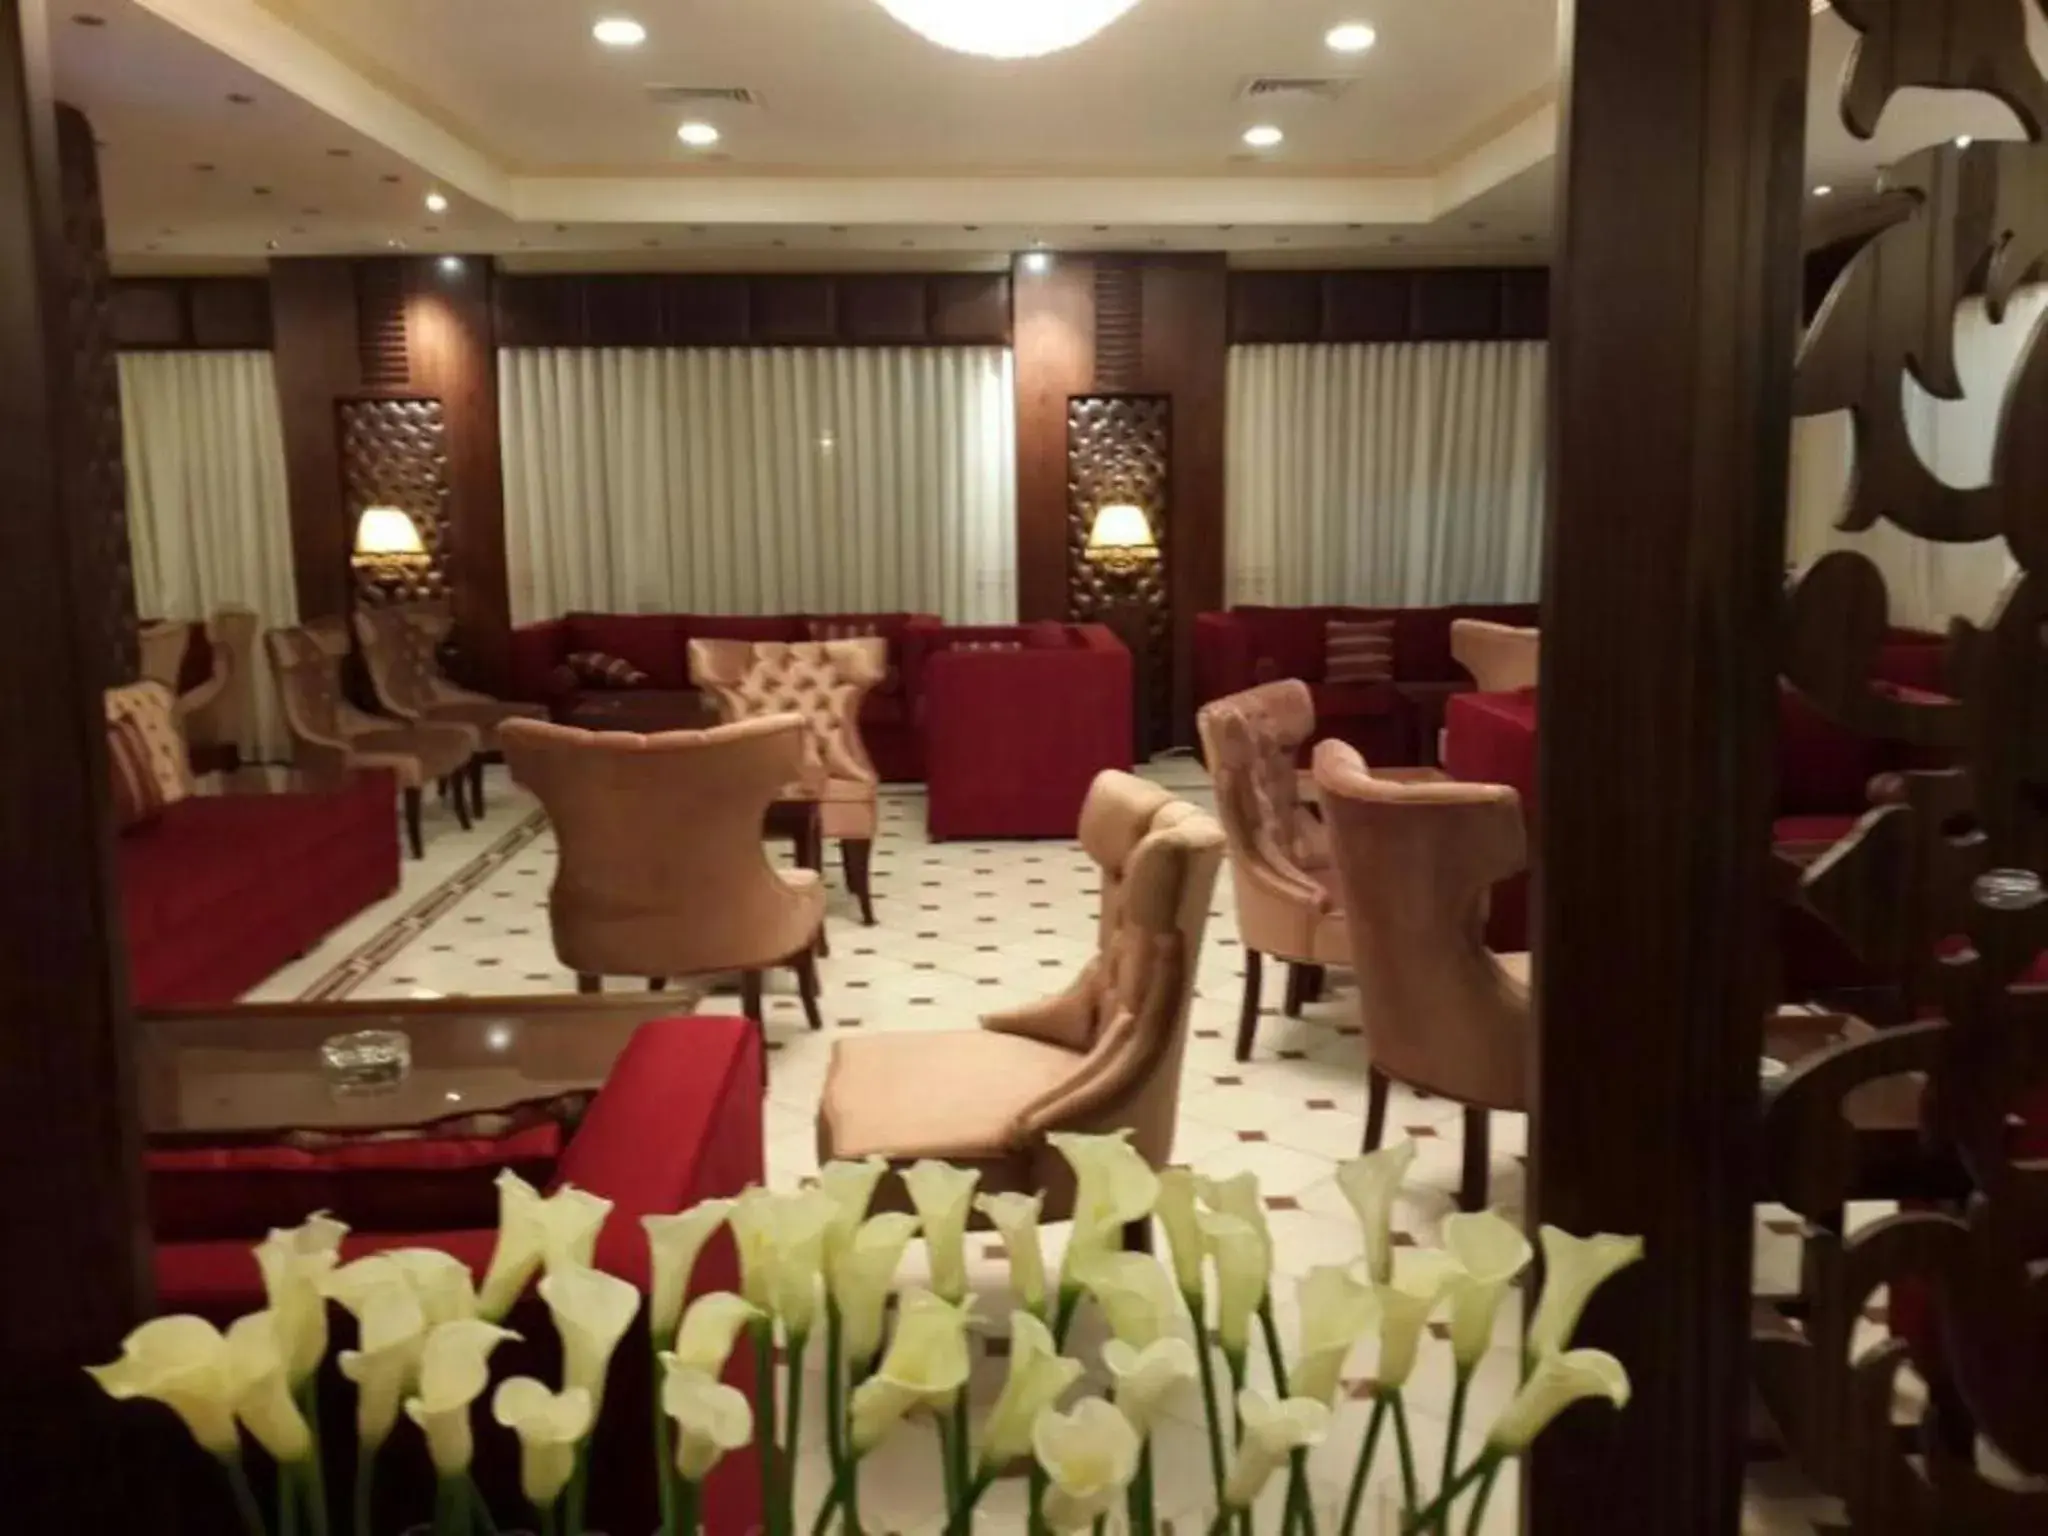 Lobby or reception in Al Thuraya Hotel